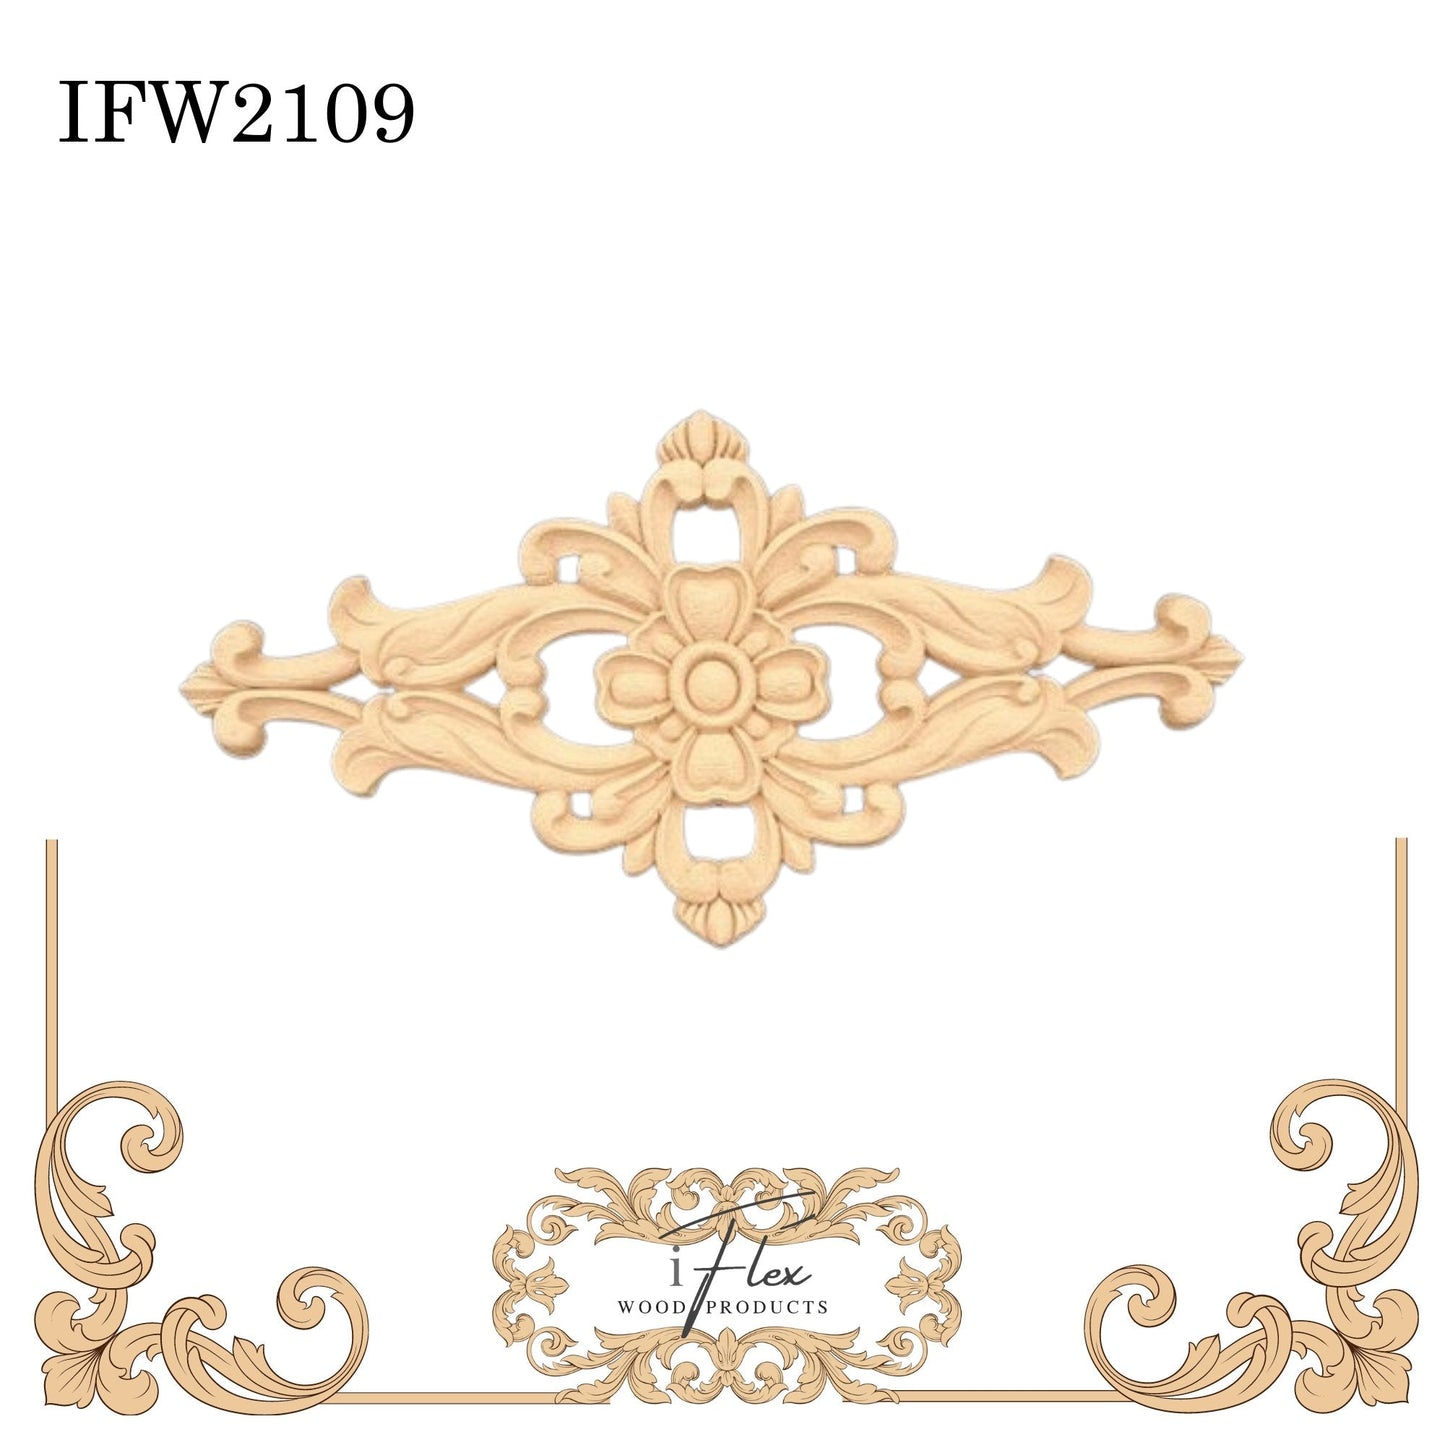 IFW 2109